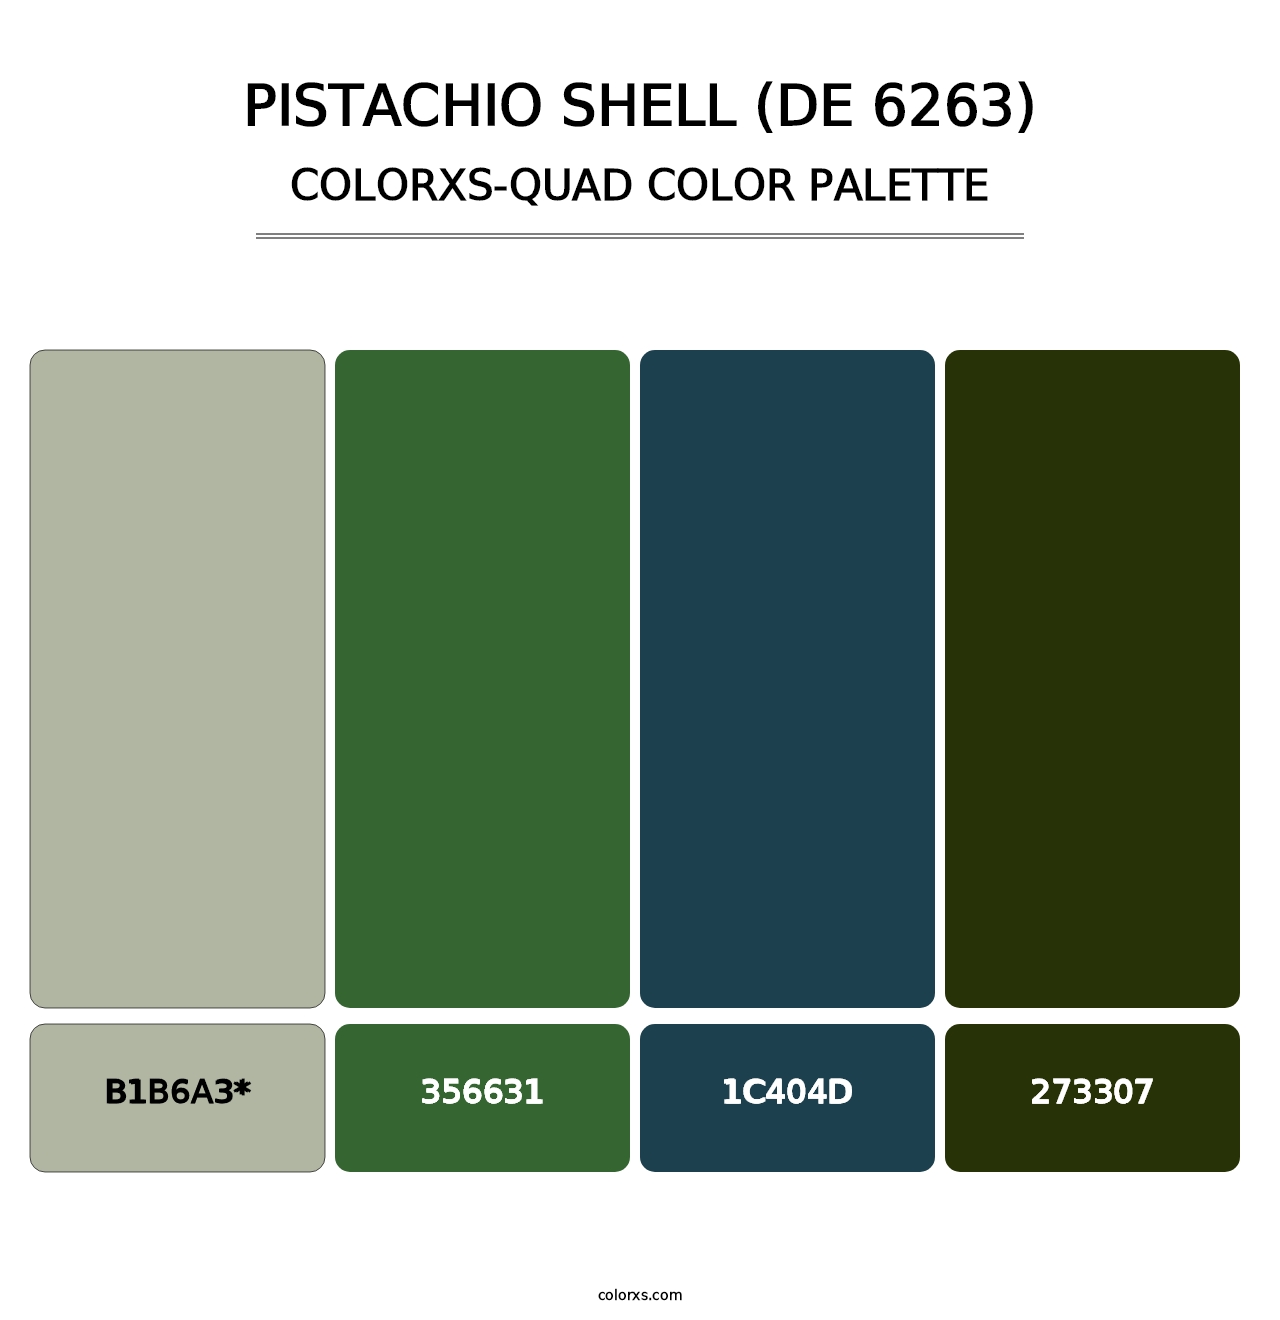 Pistachio Shell (DE 6263) - Colorxs Quad Palette